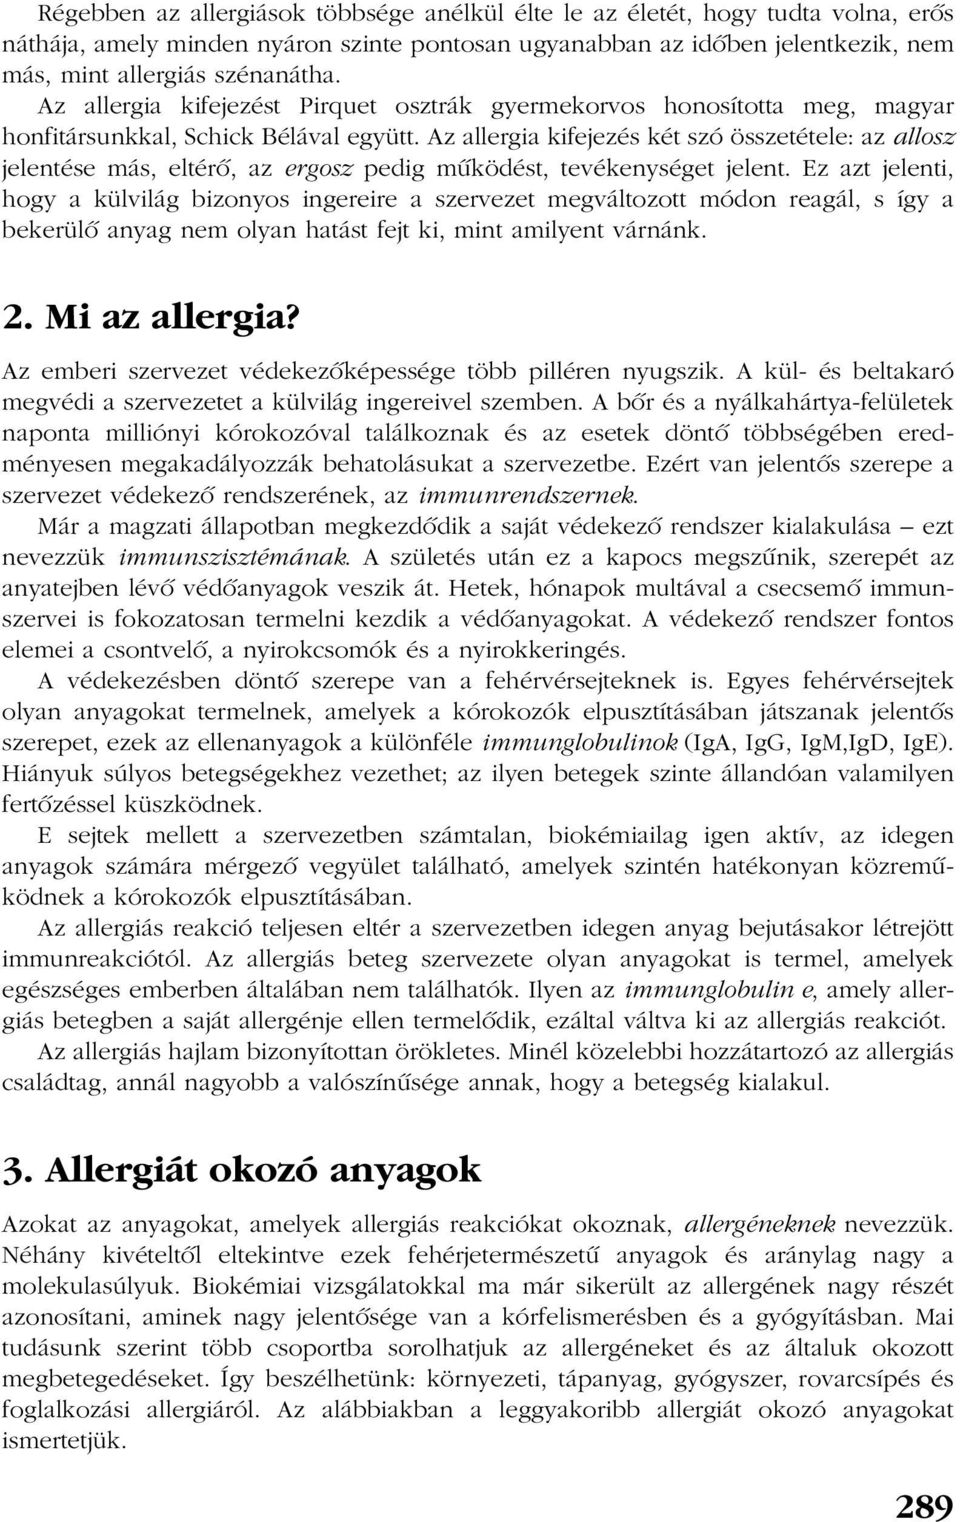 Az allergia kifejezés két szó összetétele: az allosz jelentése más, eltérõ, az ergosz pedig mûködést, tevékenységet jelent.